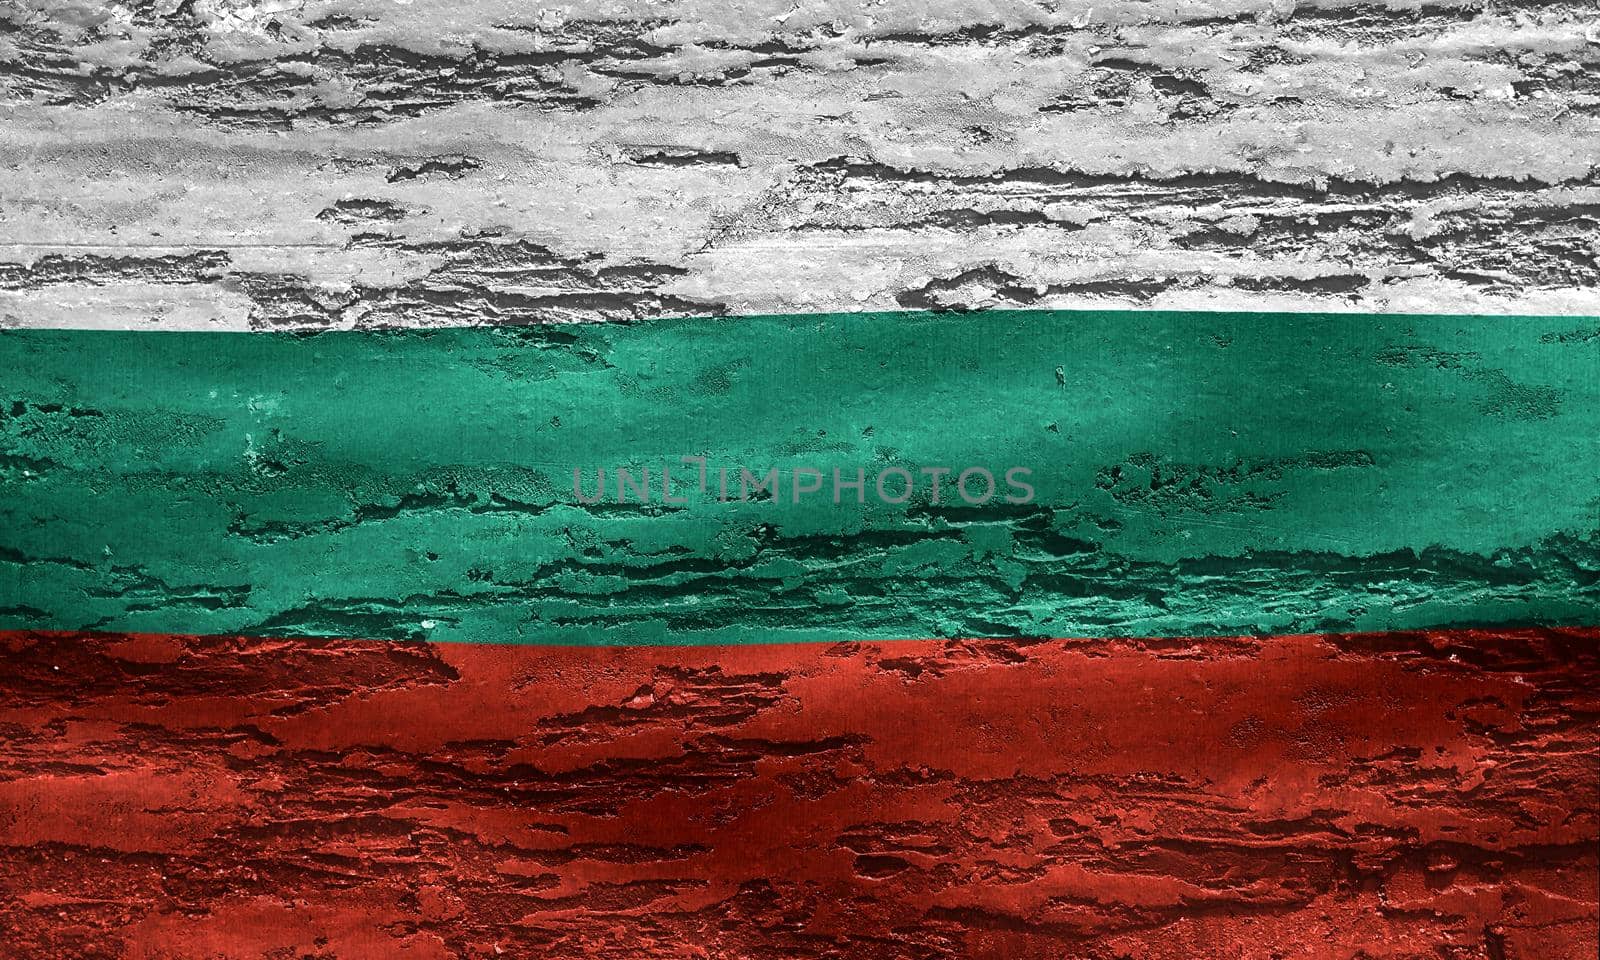 Bulgaria flag - realistic waving fabric flag by MP_foto71